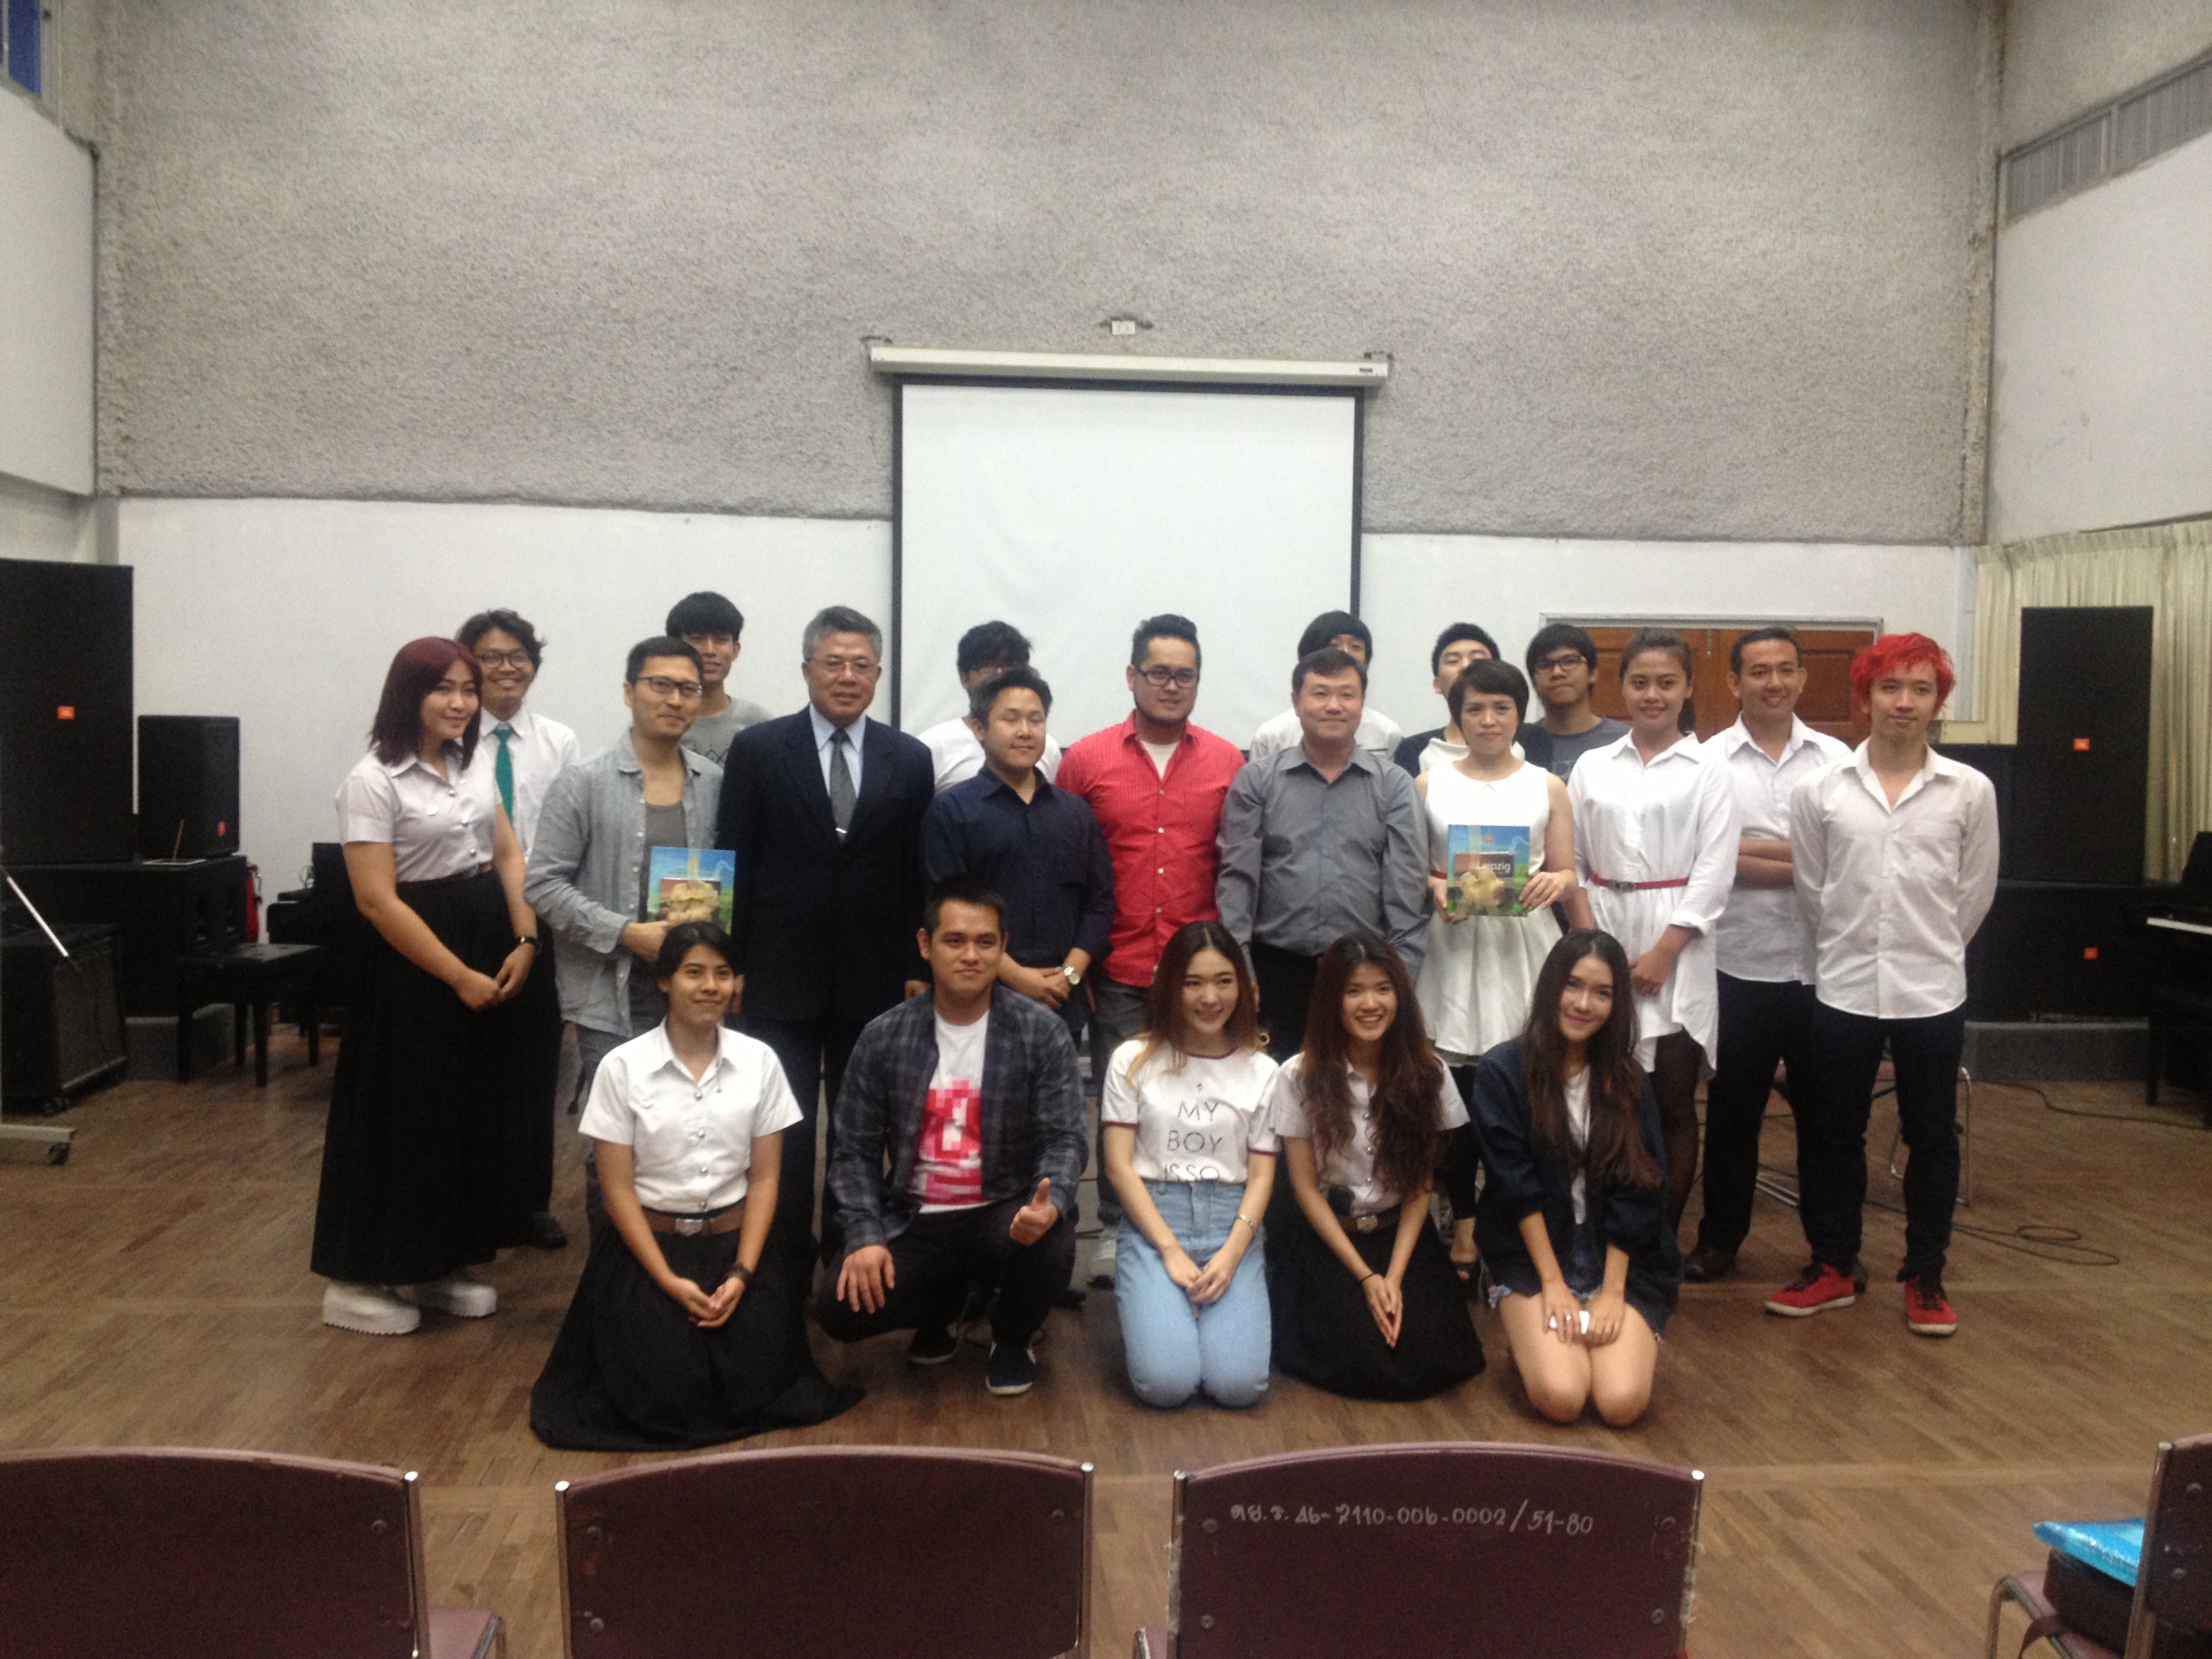 歐開合唱團於泰國藝術大學進行交流活動